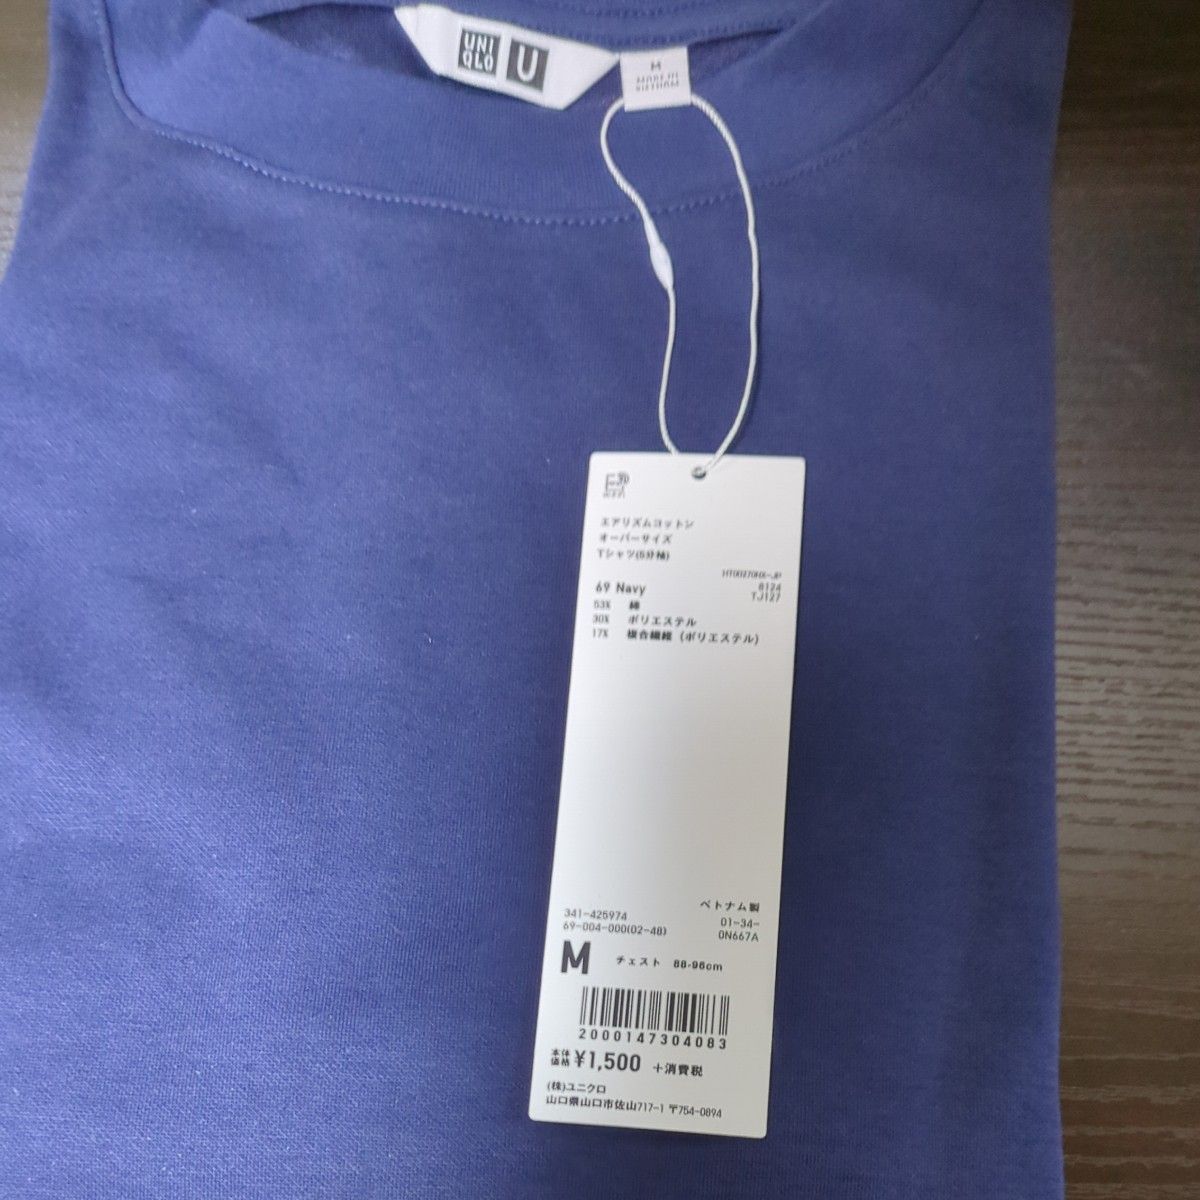 Uniqlo U　ユニクロU　エアリズムコットンオーバーサイズTシャツ（5分袖）カラー: 69 NAVY メンズM